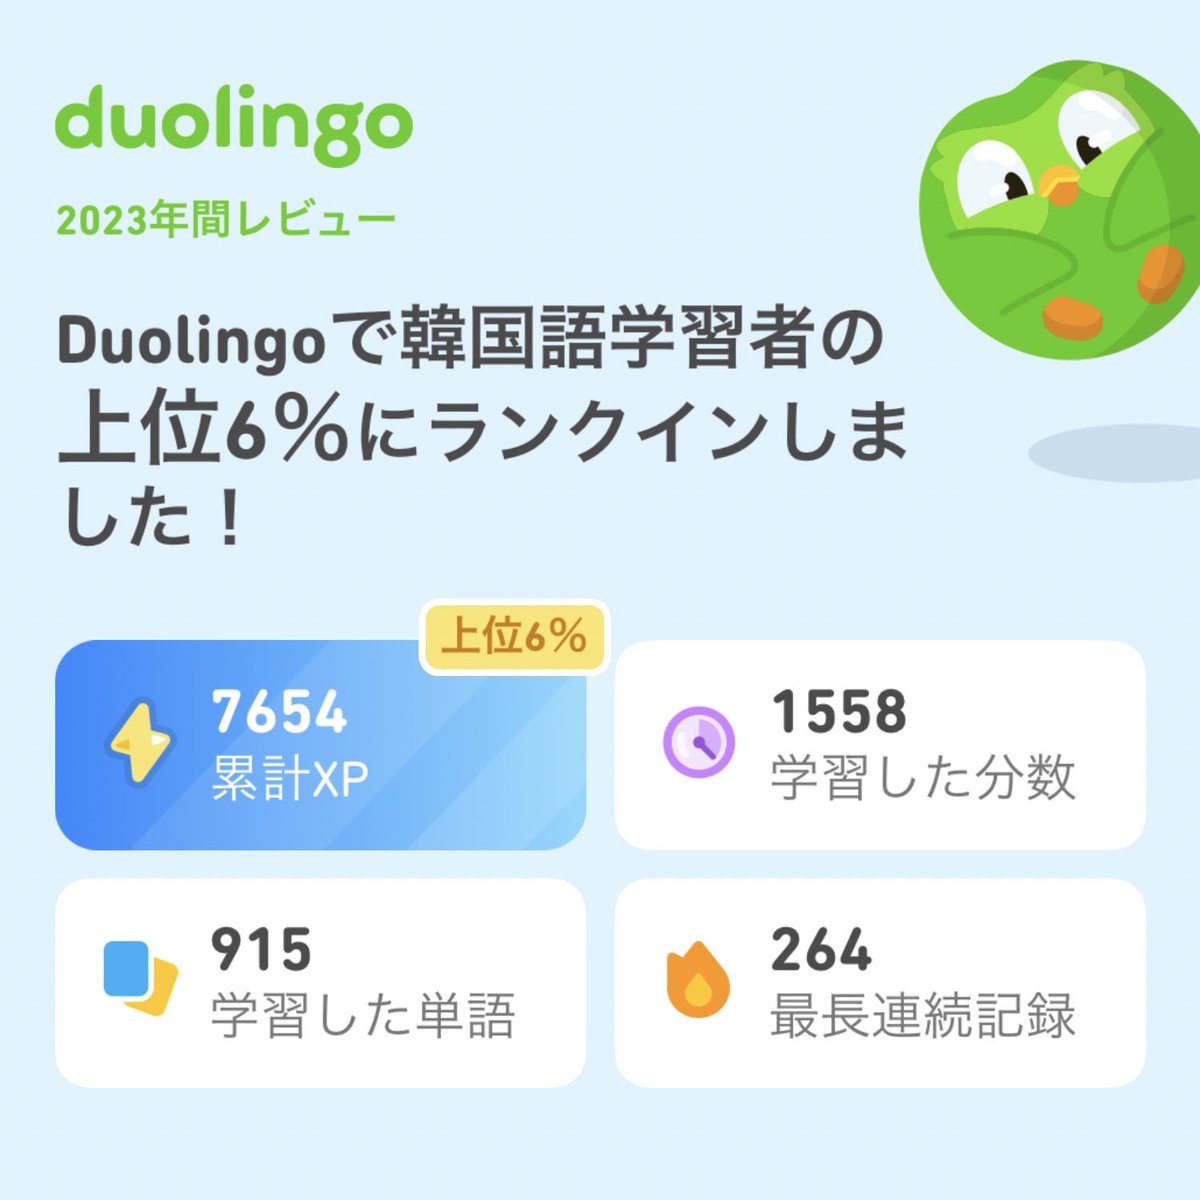 2023年のDuolingoの学習記録が出たよ！ #Duolingo365